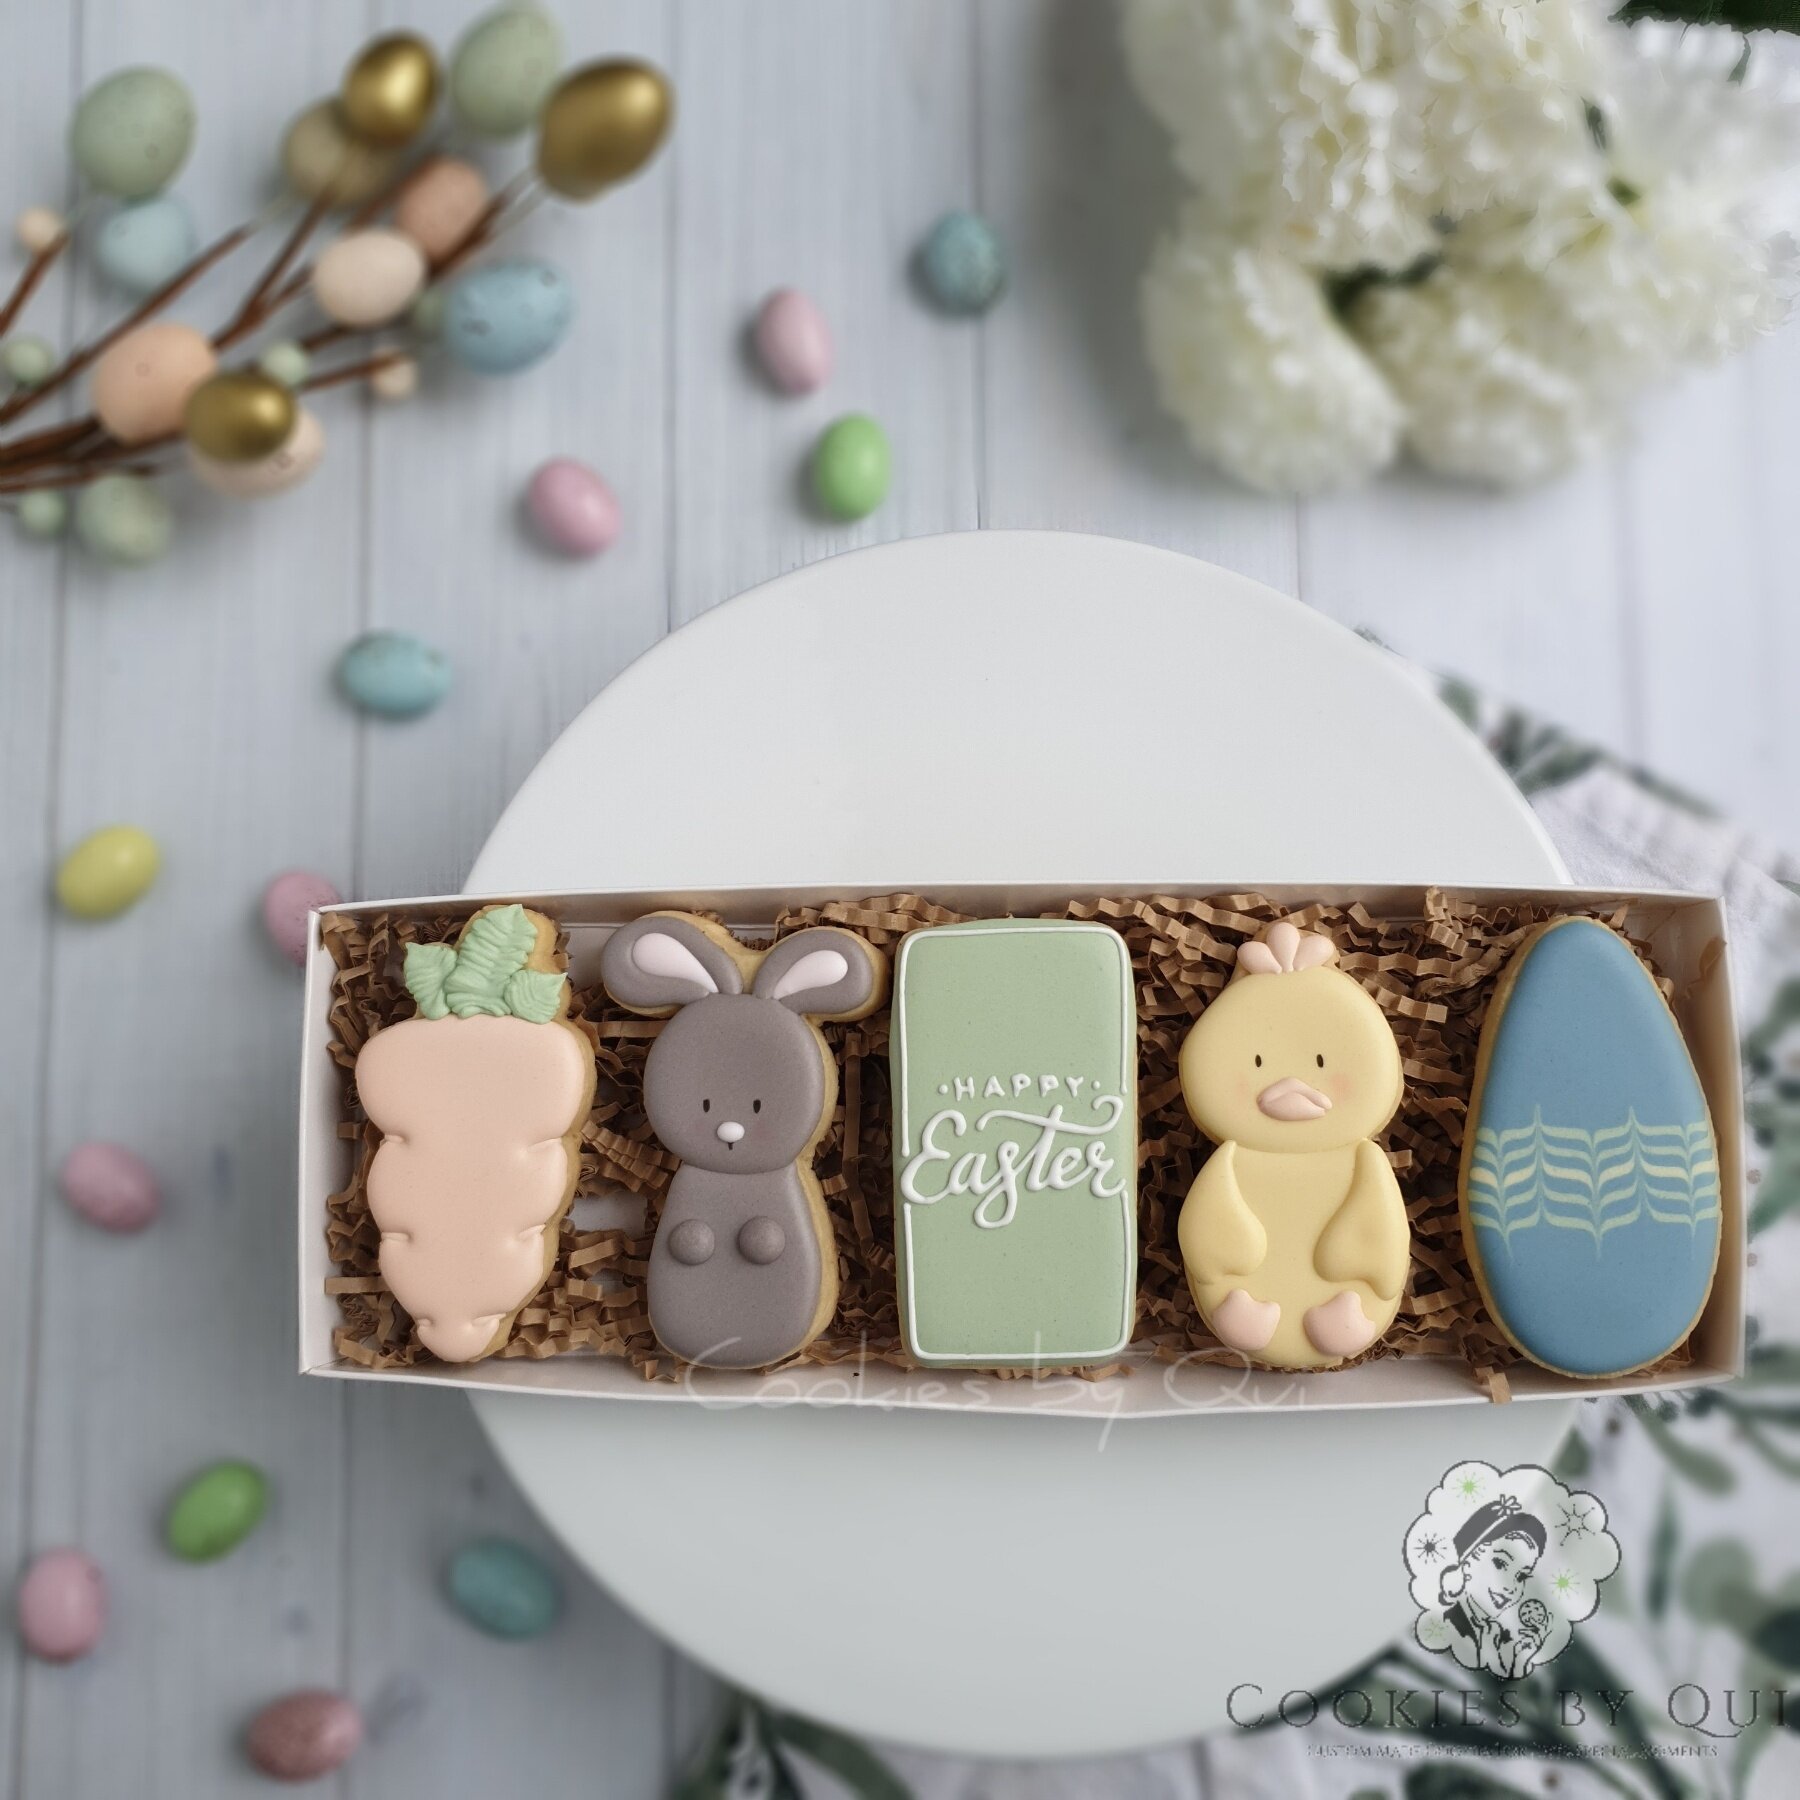 Easter 5 Pack 2021 - Cookies by Qui Geelong.jpg